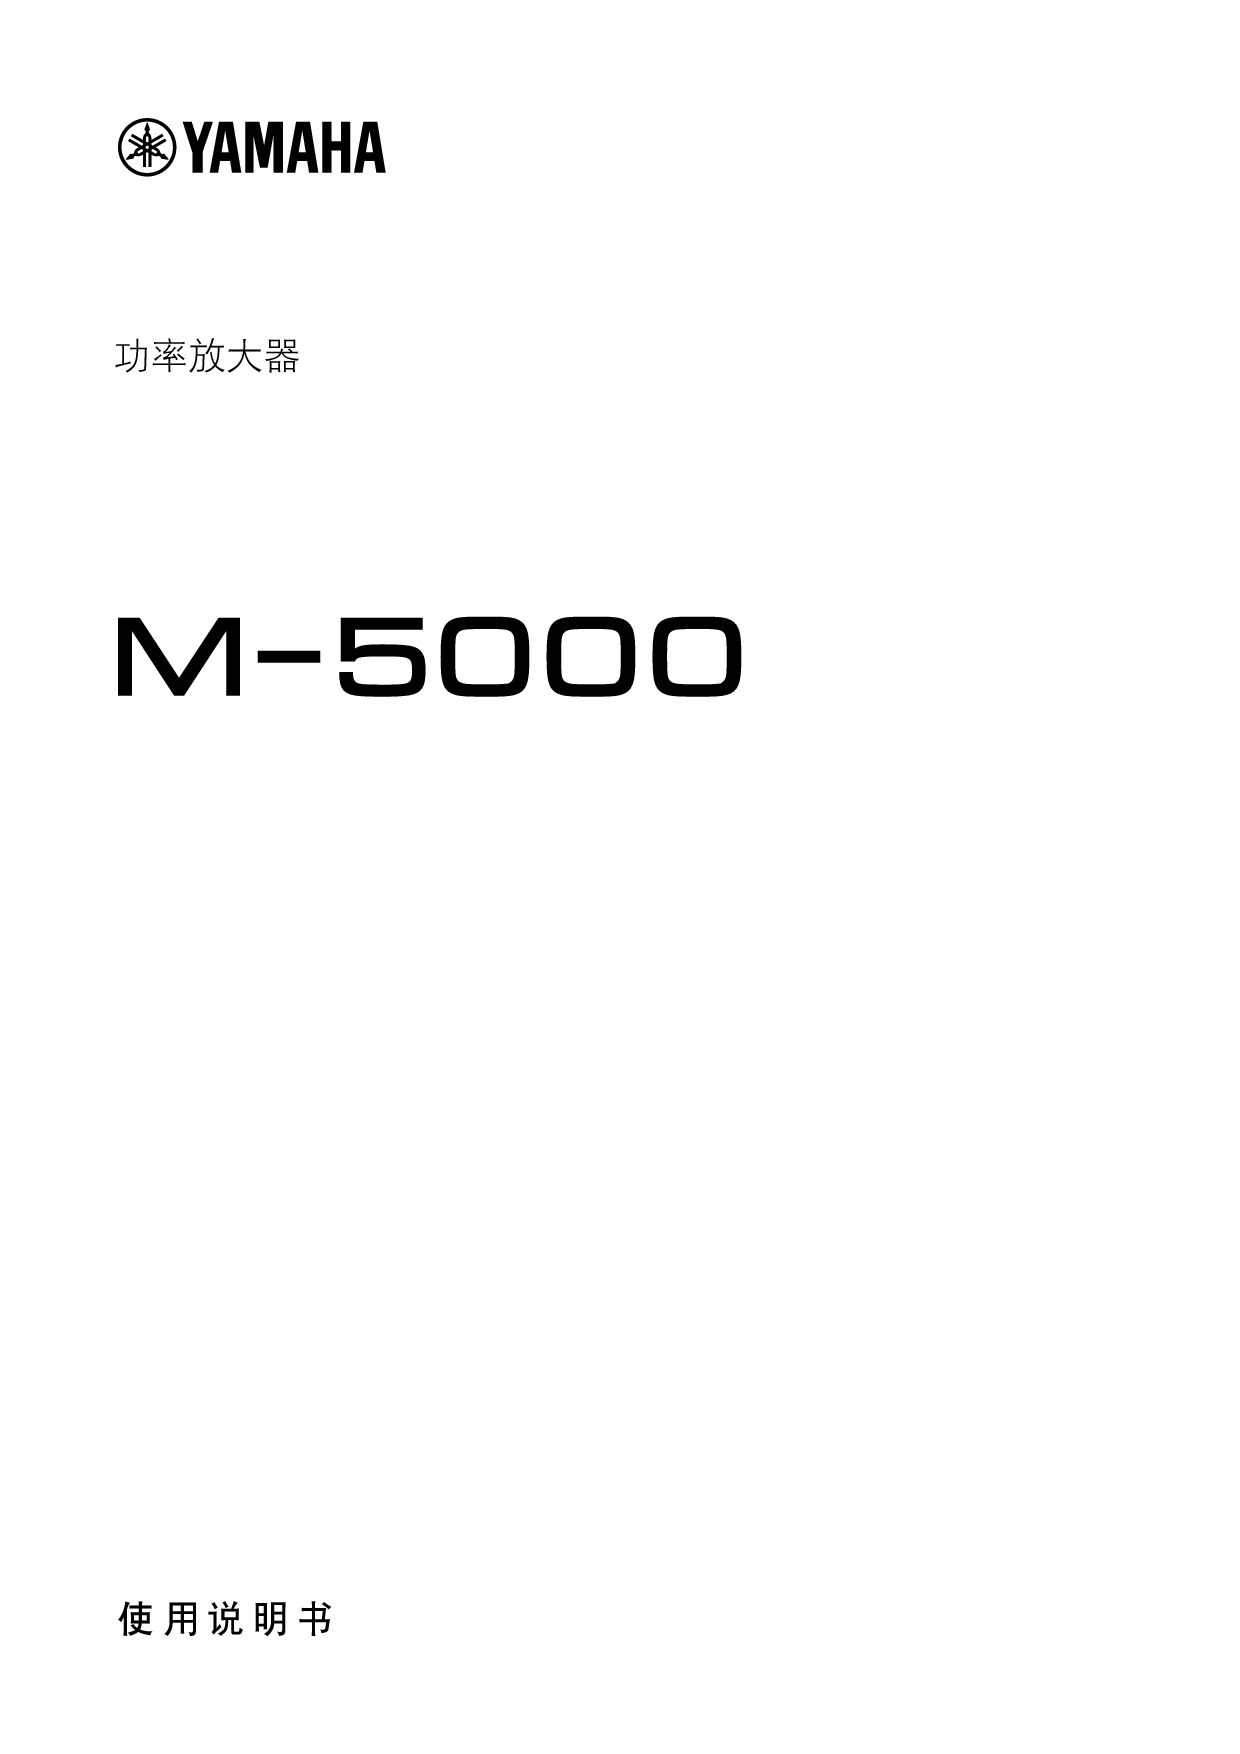 雅马哈 Yamaha M-5000 使用说明书 封面